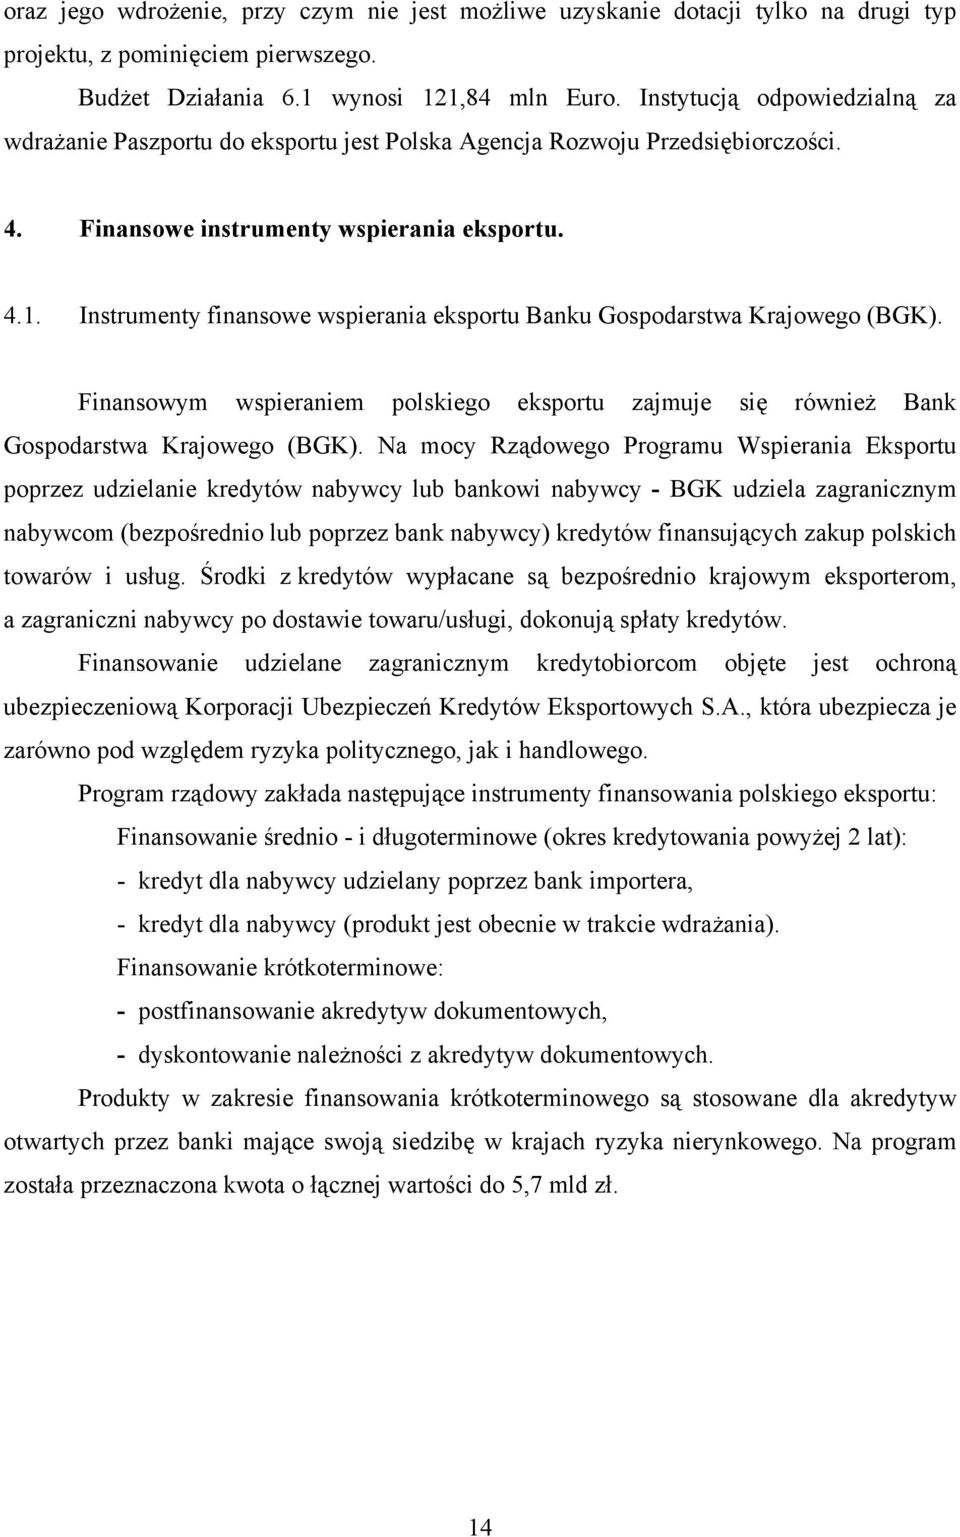 Instrumenty finansowe wspierania eksportu Banku Gospodarstwa Krajowego (BGK). Finansowym wspieraniem polskiego eksportu zajmuje się również Bank Gospodarstwa Krajowego (BGK).